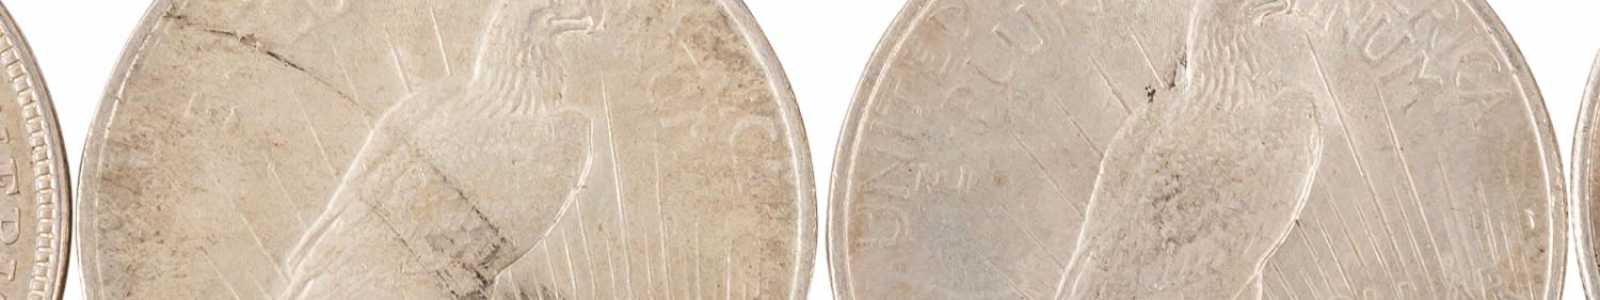 Münzen, Medallien, Briefmarken, Historika